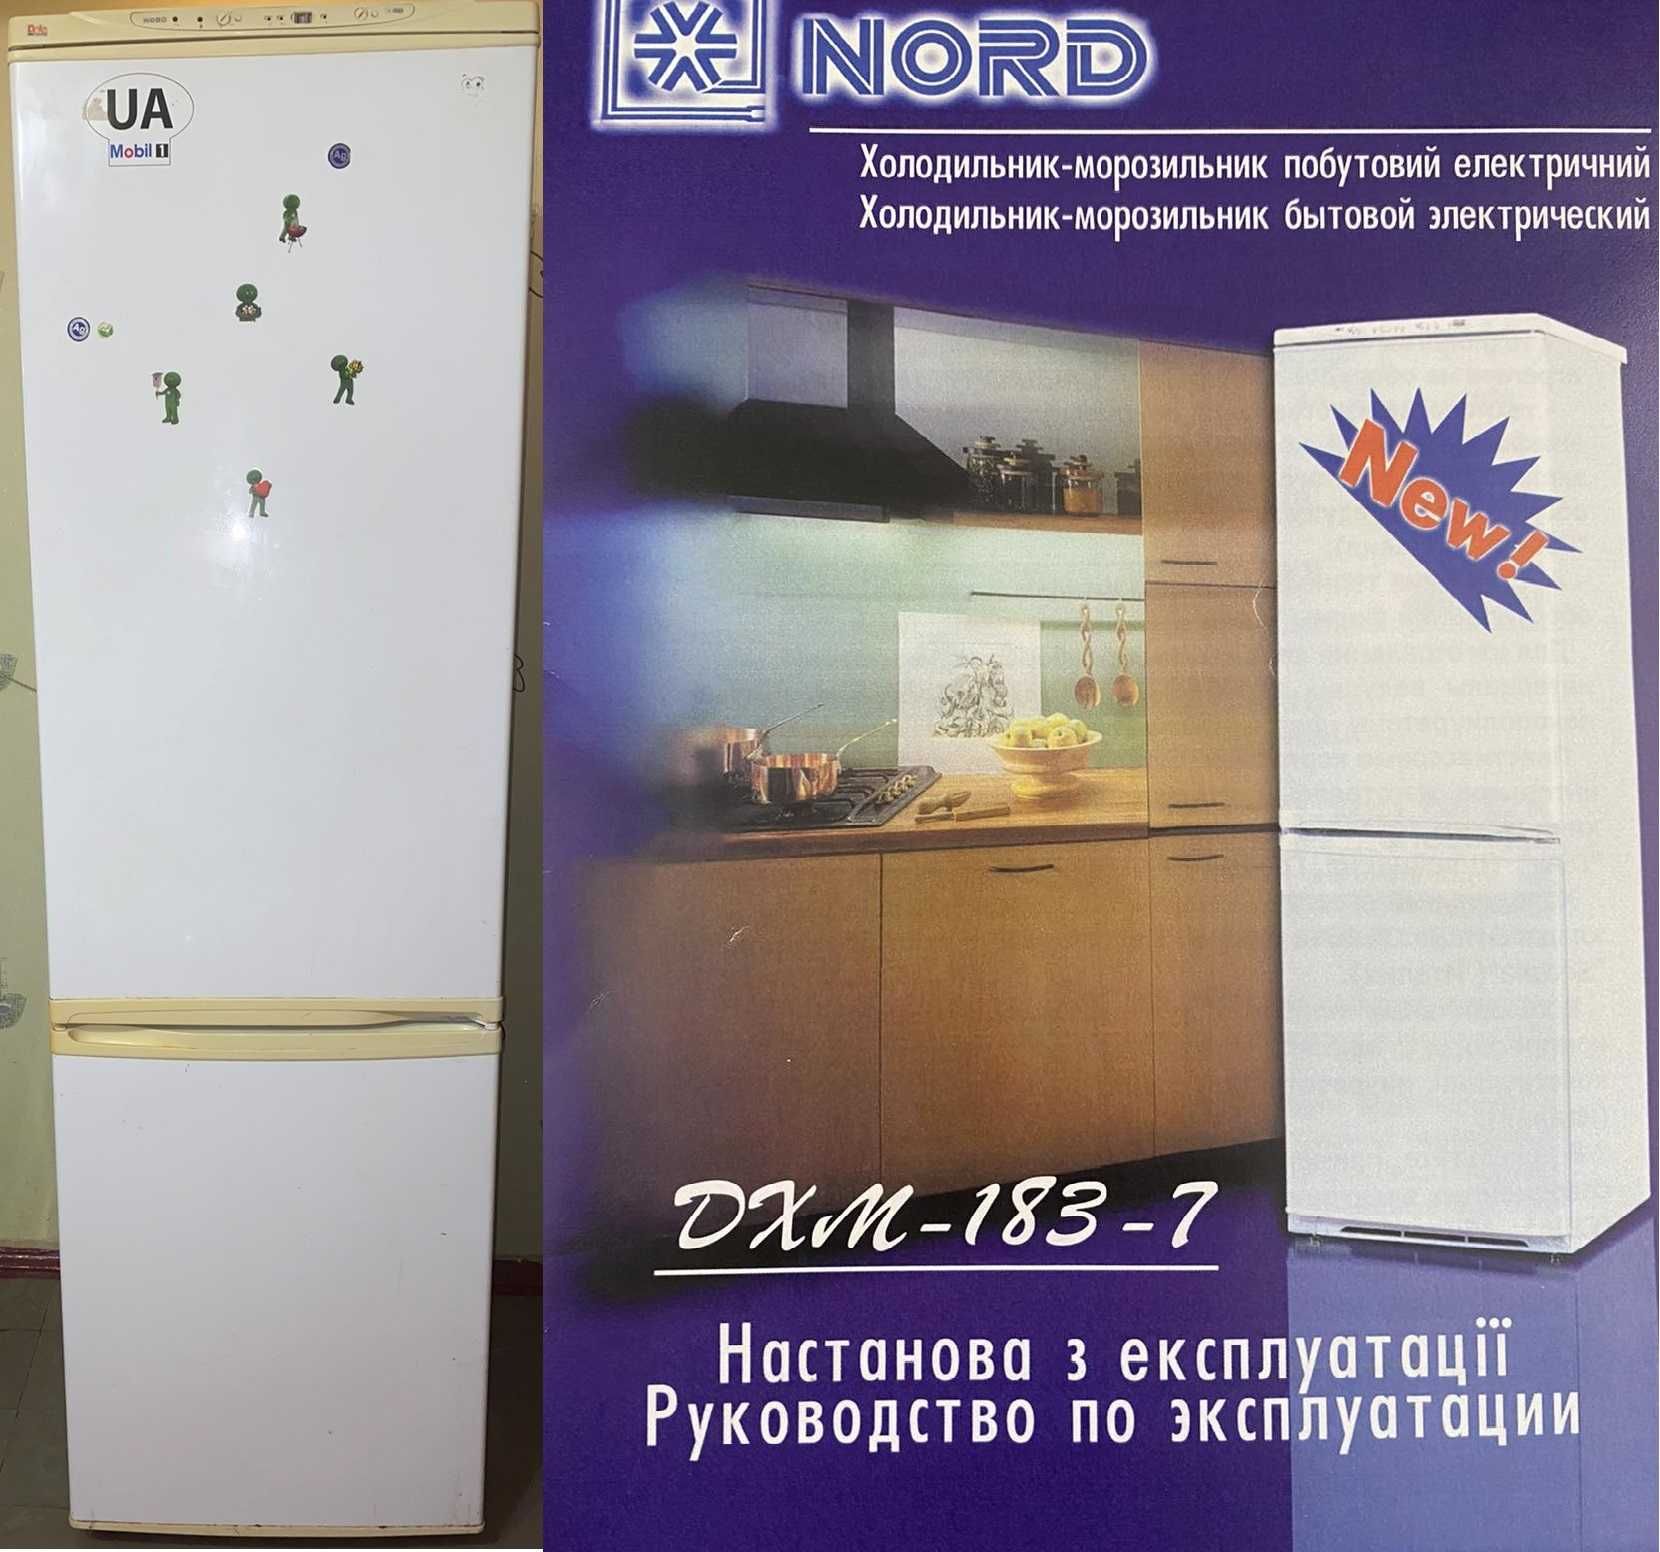 Двухкомпрессорный двухкамерный холодильник NORD